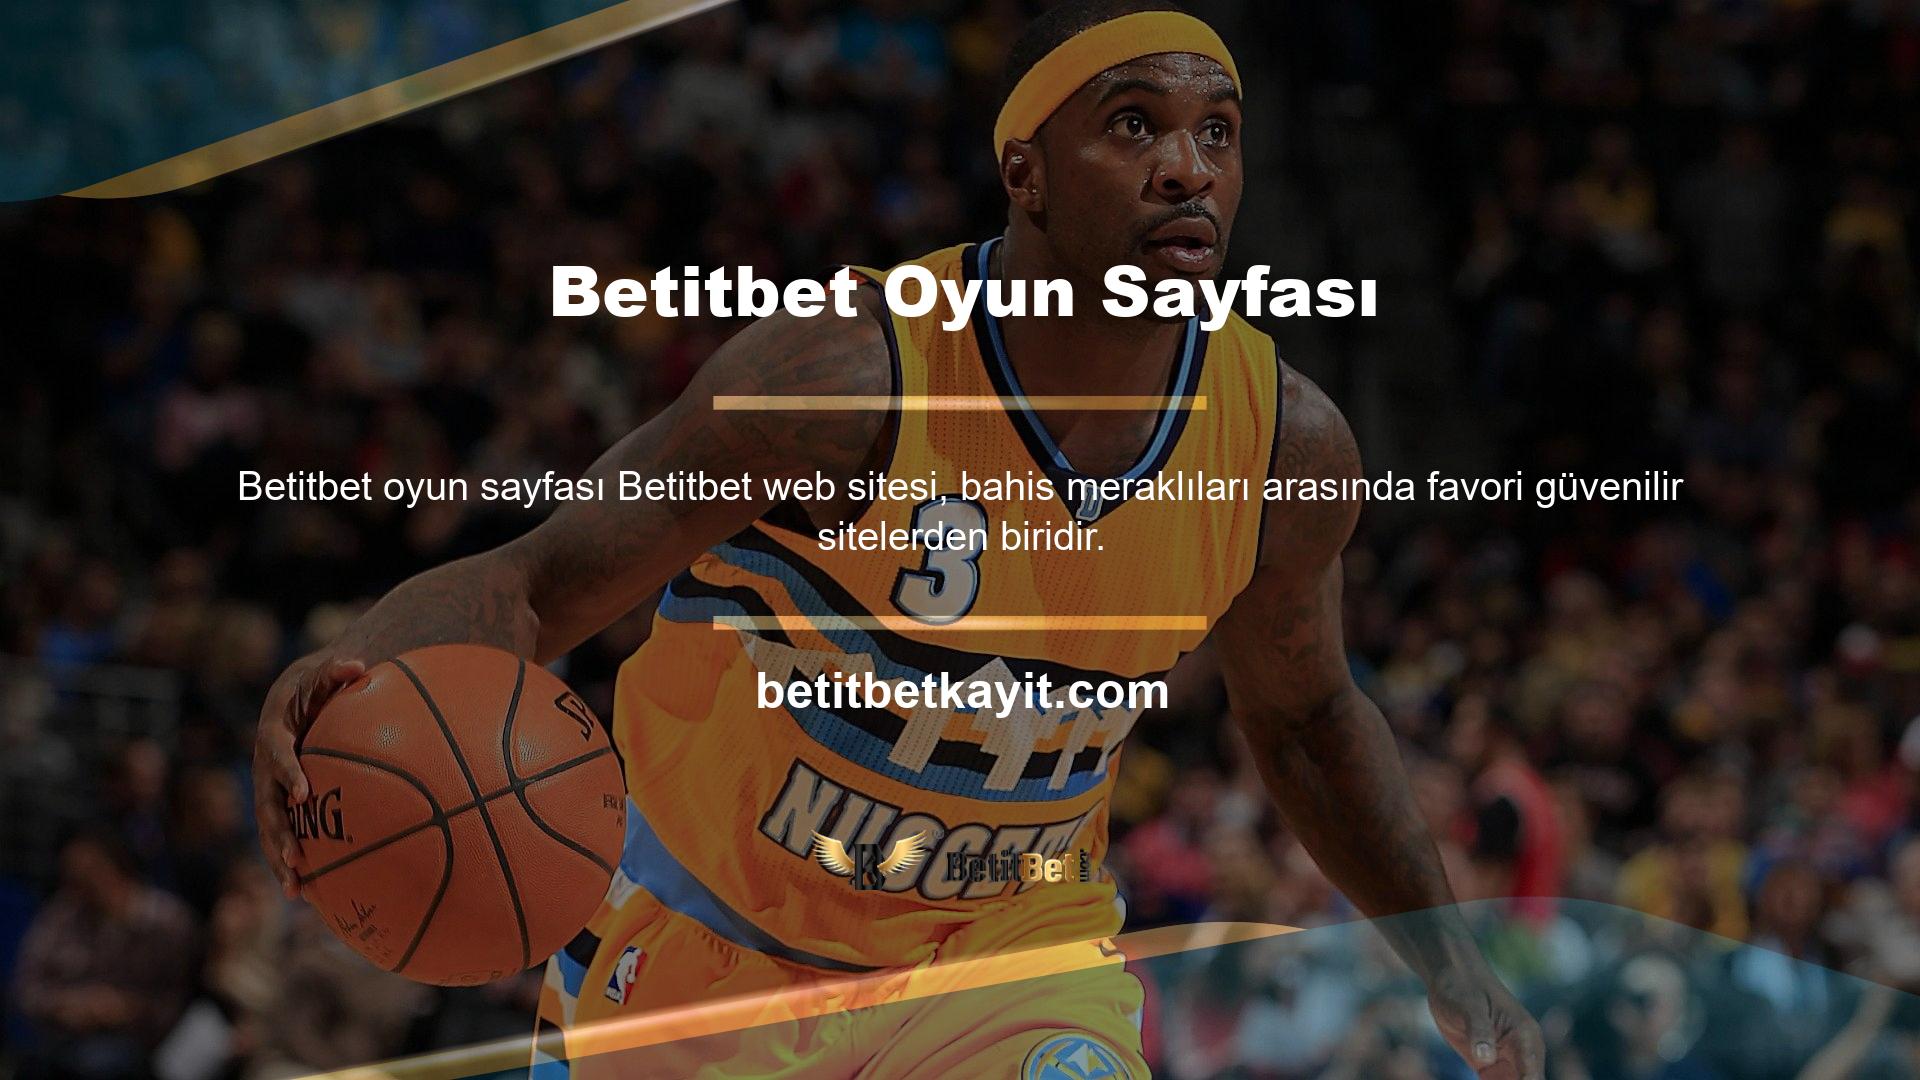 Betitbet web sitesi çeşitli içeriklere sahiptir